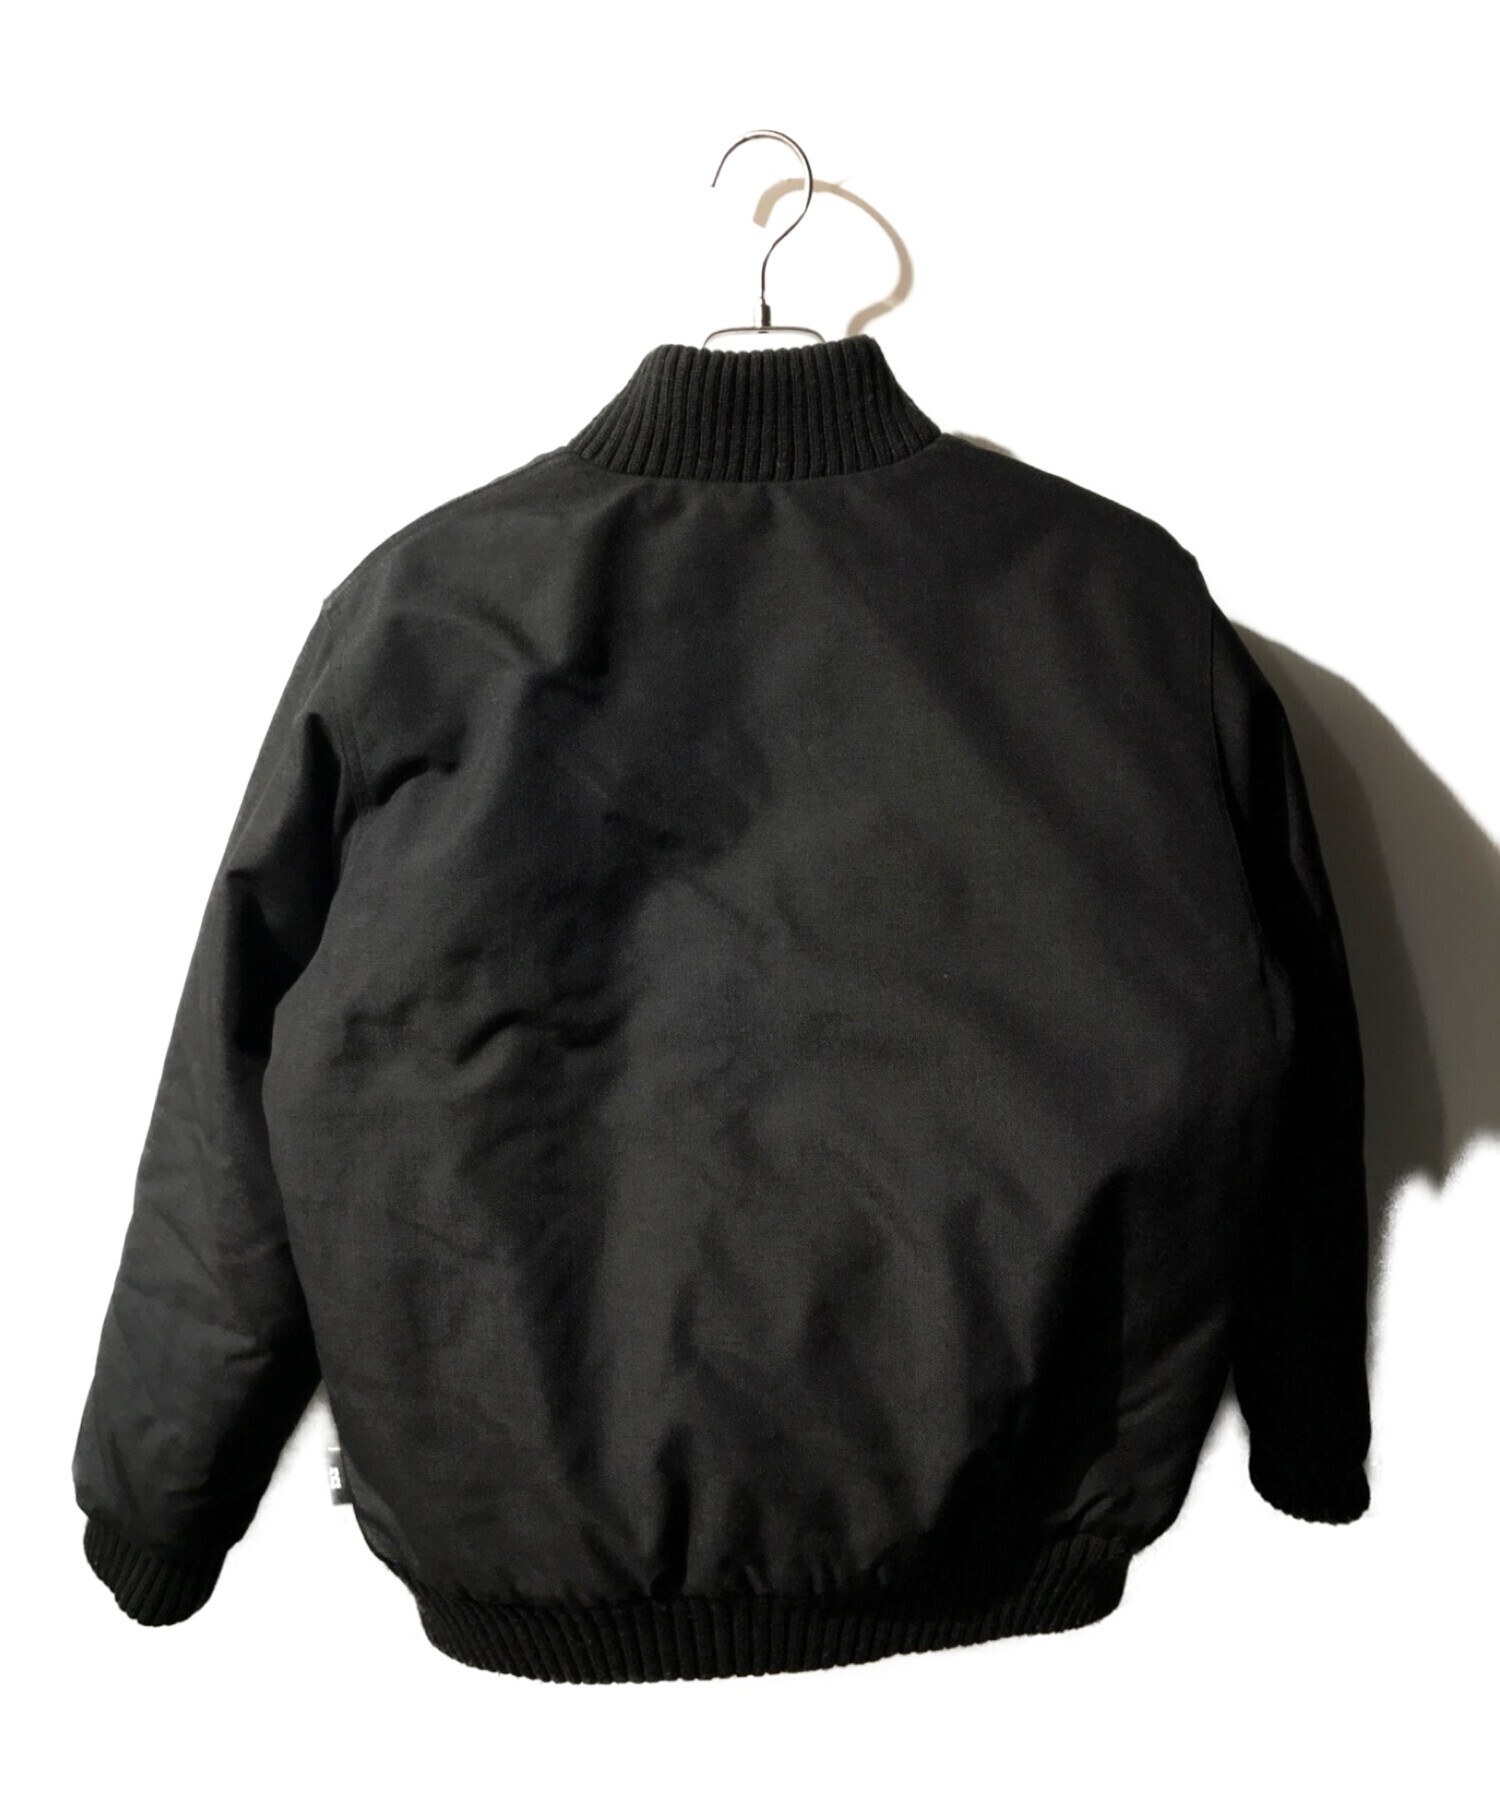 CarHartt (カーハート) コーデュラナイロンジャケット ブラック サイズ:M